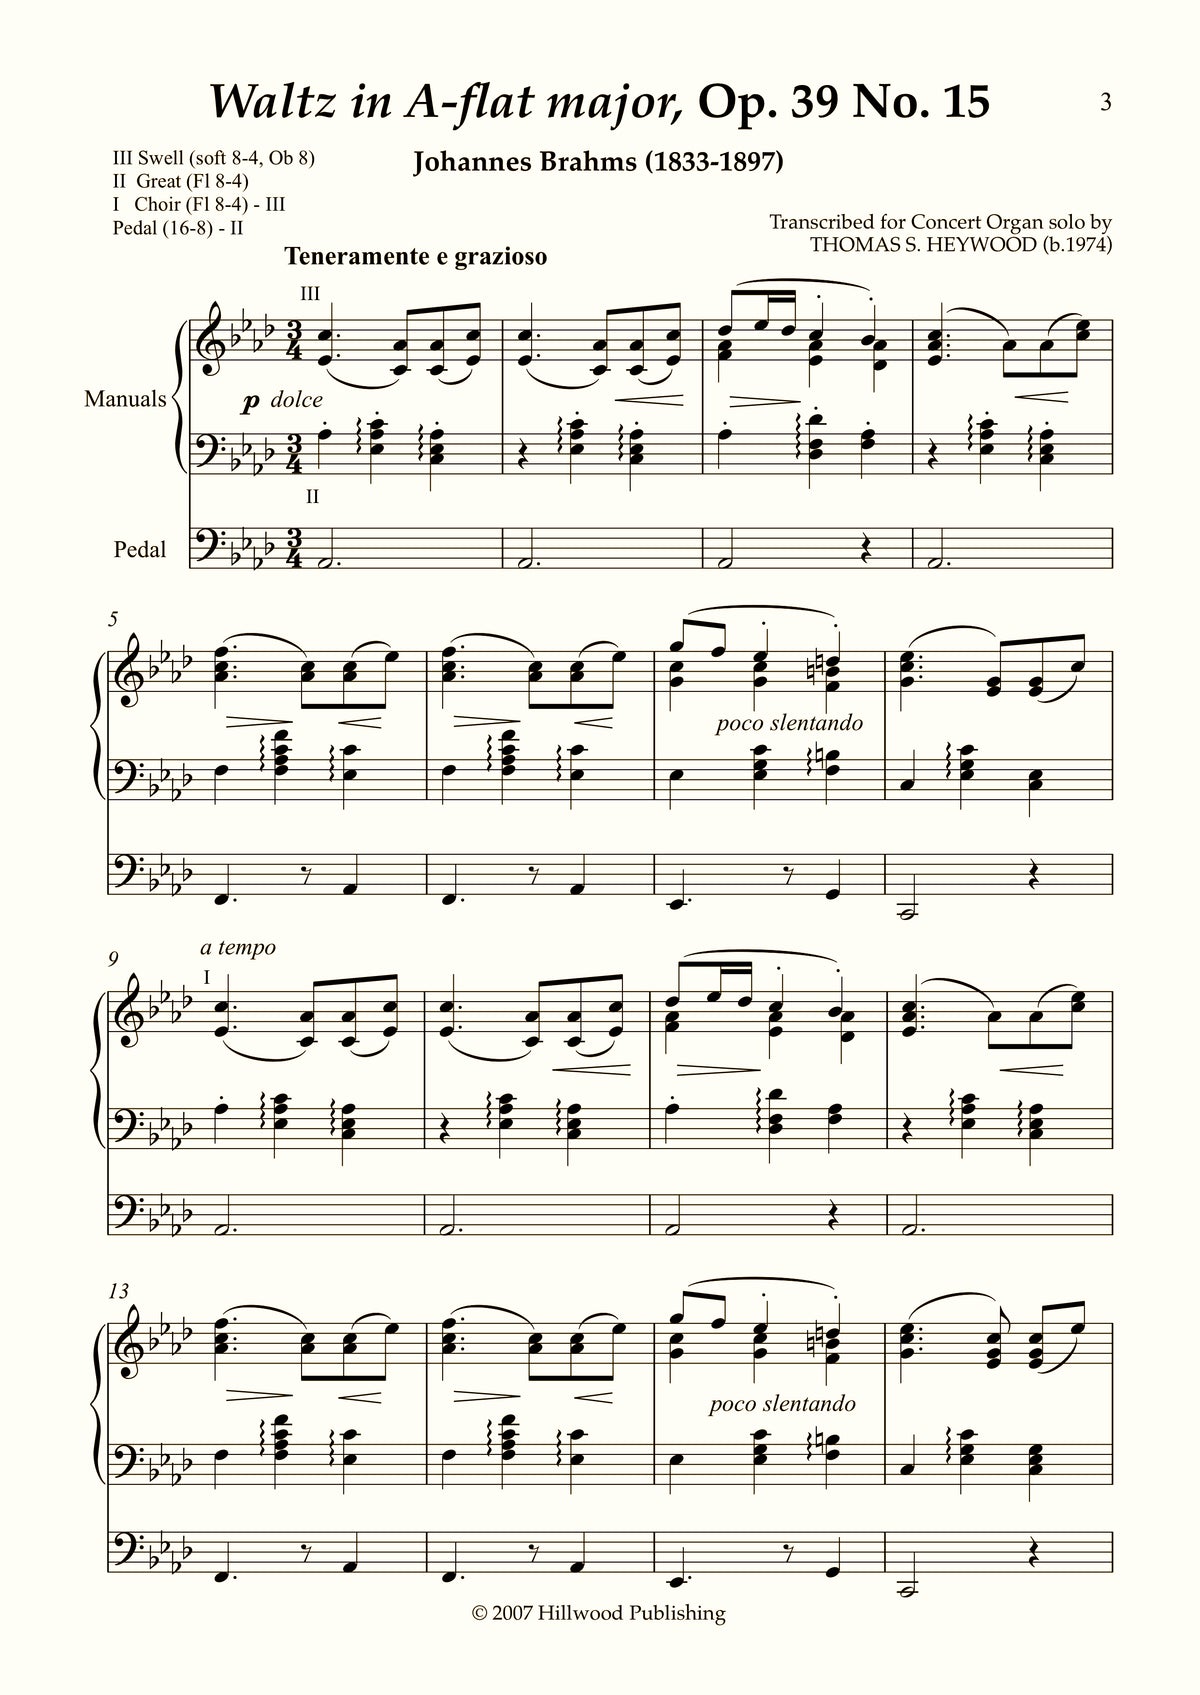 Brahms/Heywood - Waltz in A-flat major from Sixteen Waltzes, Op. 39 No. 15 (Score)